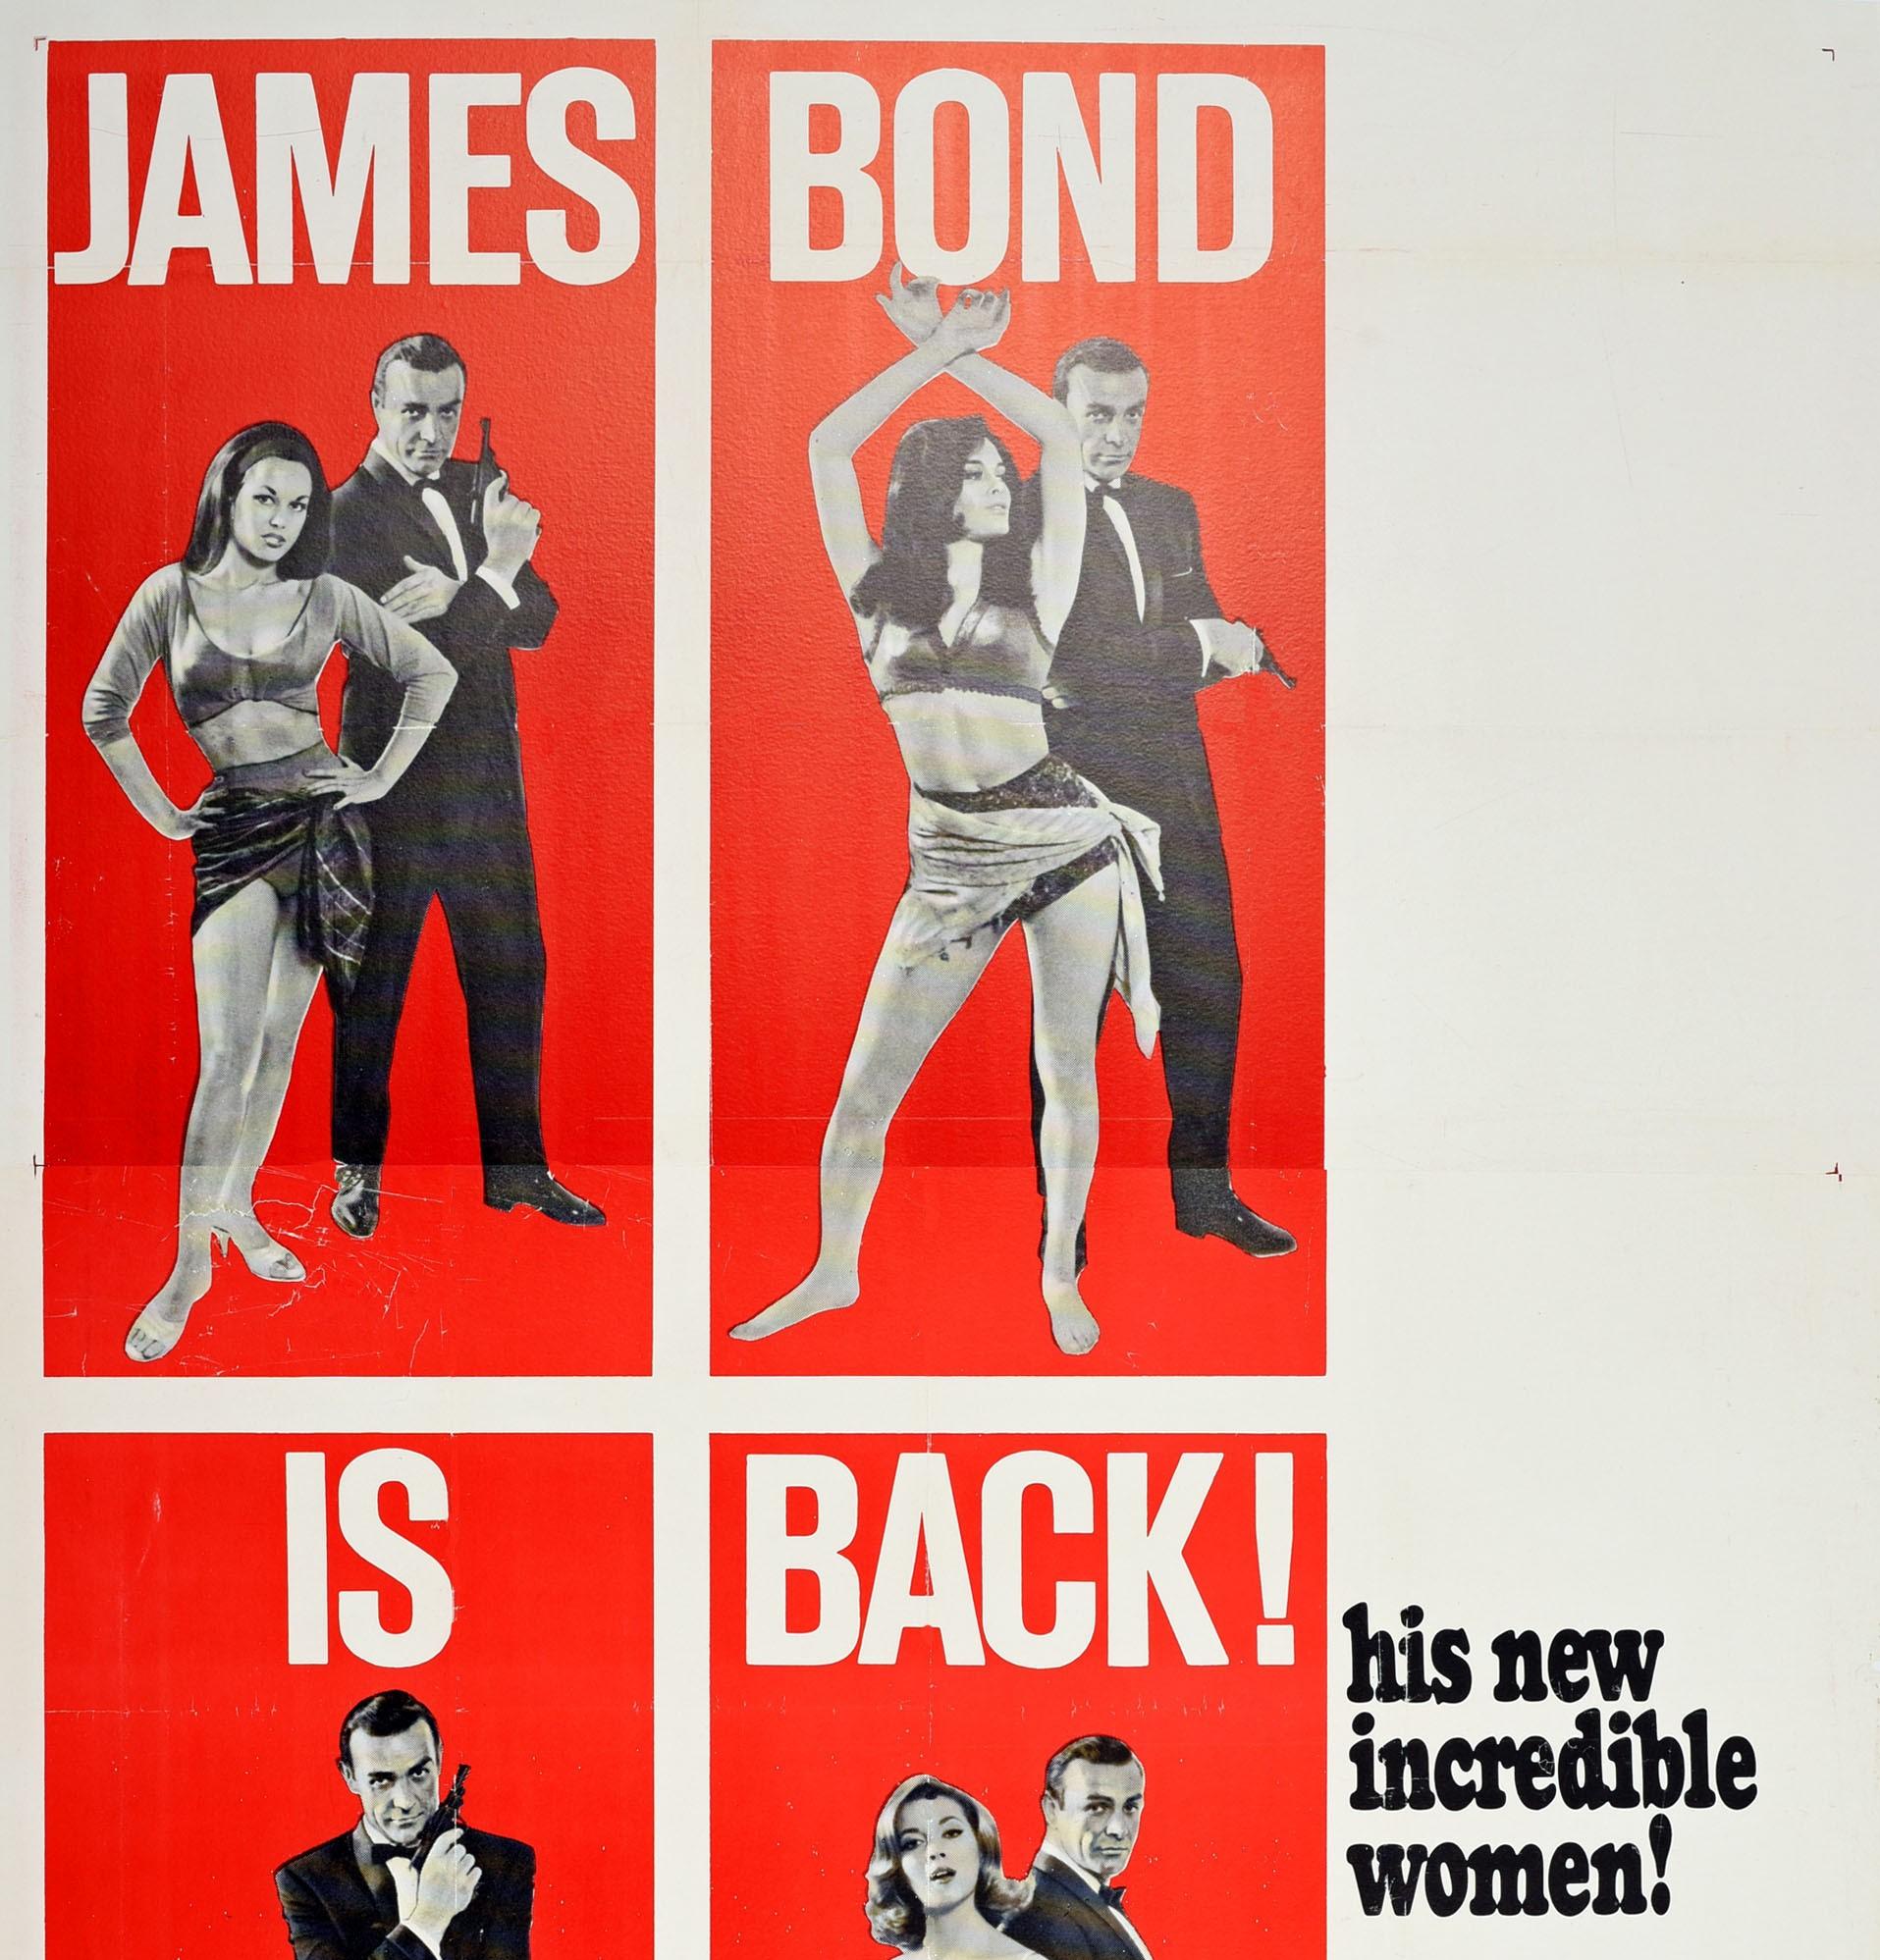 Originales dreiteiliges Filmplakat für den 007 James Bond Spionagefilm From Russia With Love unter der Regie von Terence Young und mit Sean Connery, Robert Shaw, Pedro Armendariz, Lotte Lenya und Bernard Lee in den Hauptrollen. Großartiges Design,